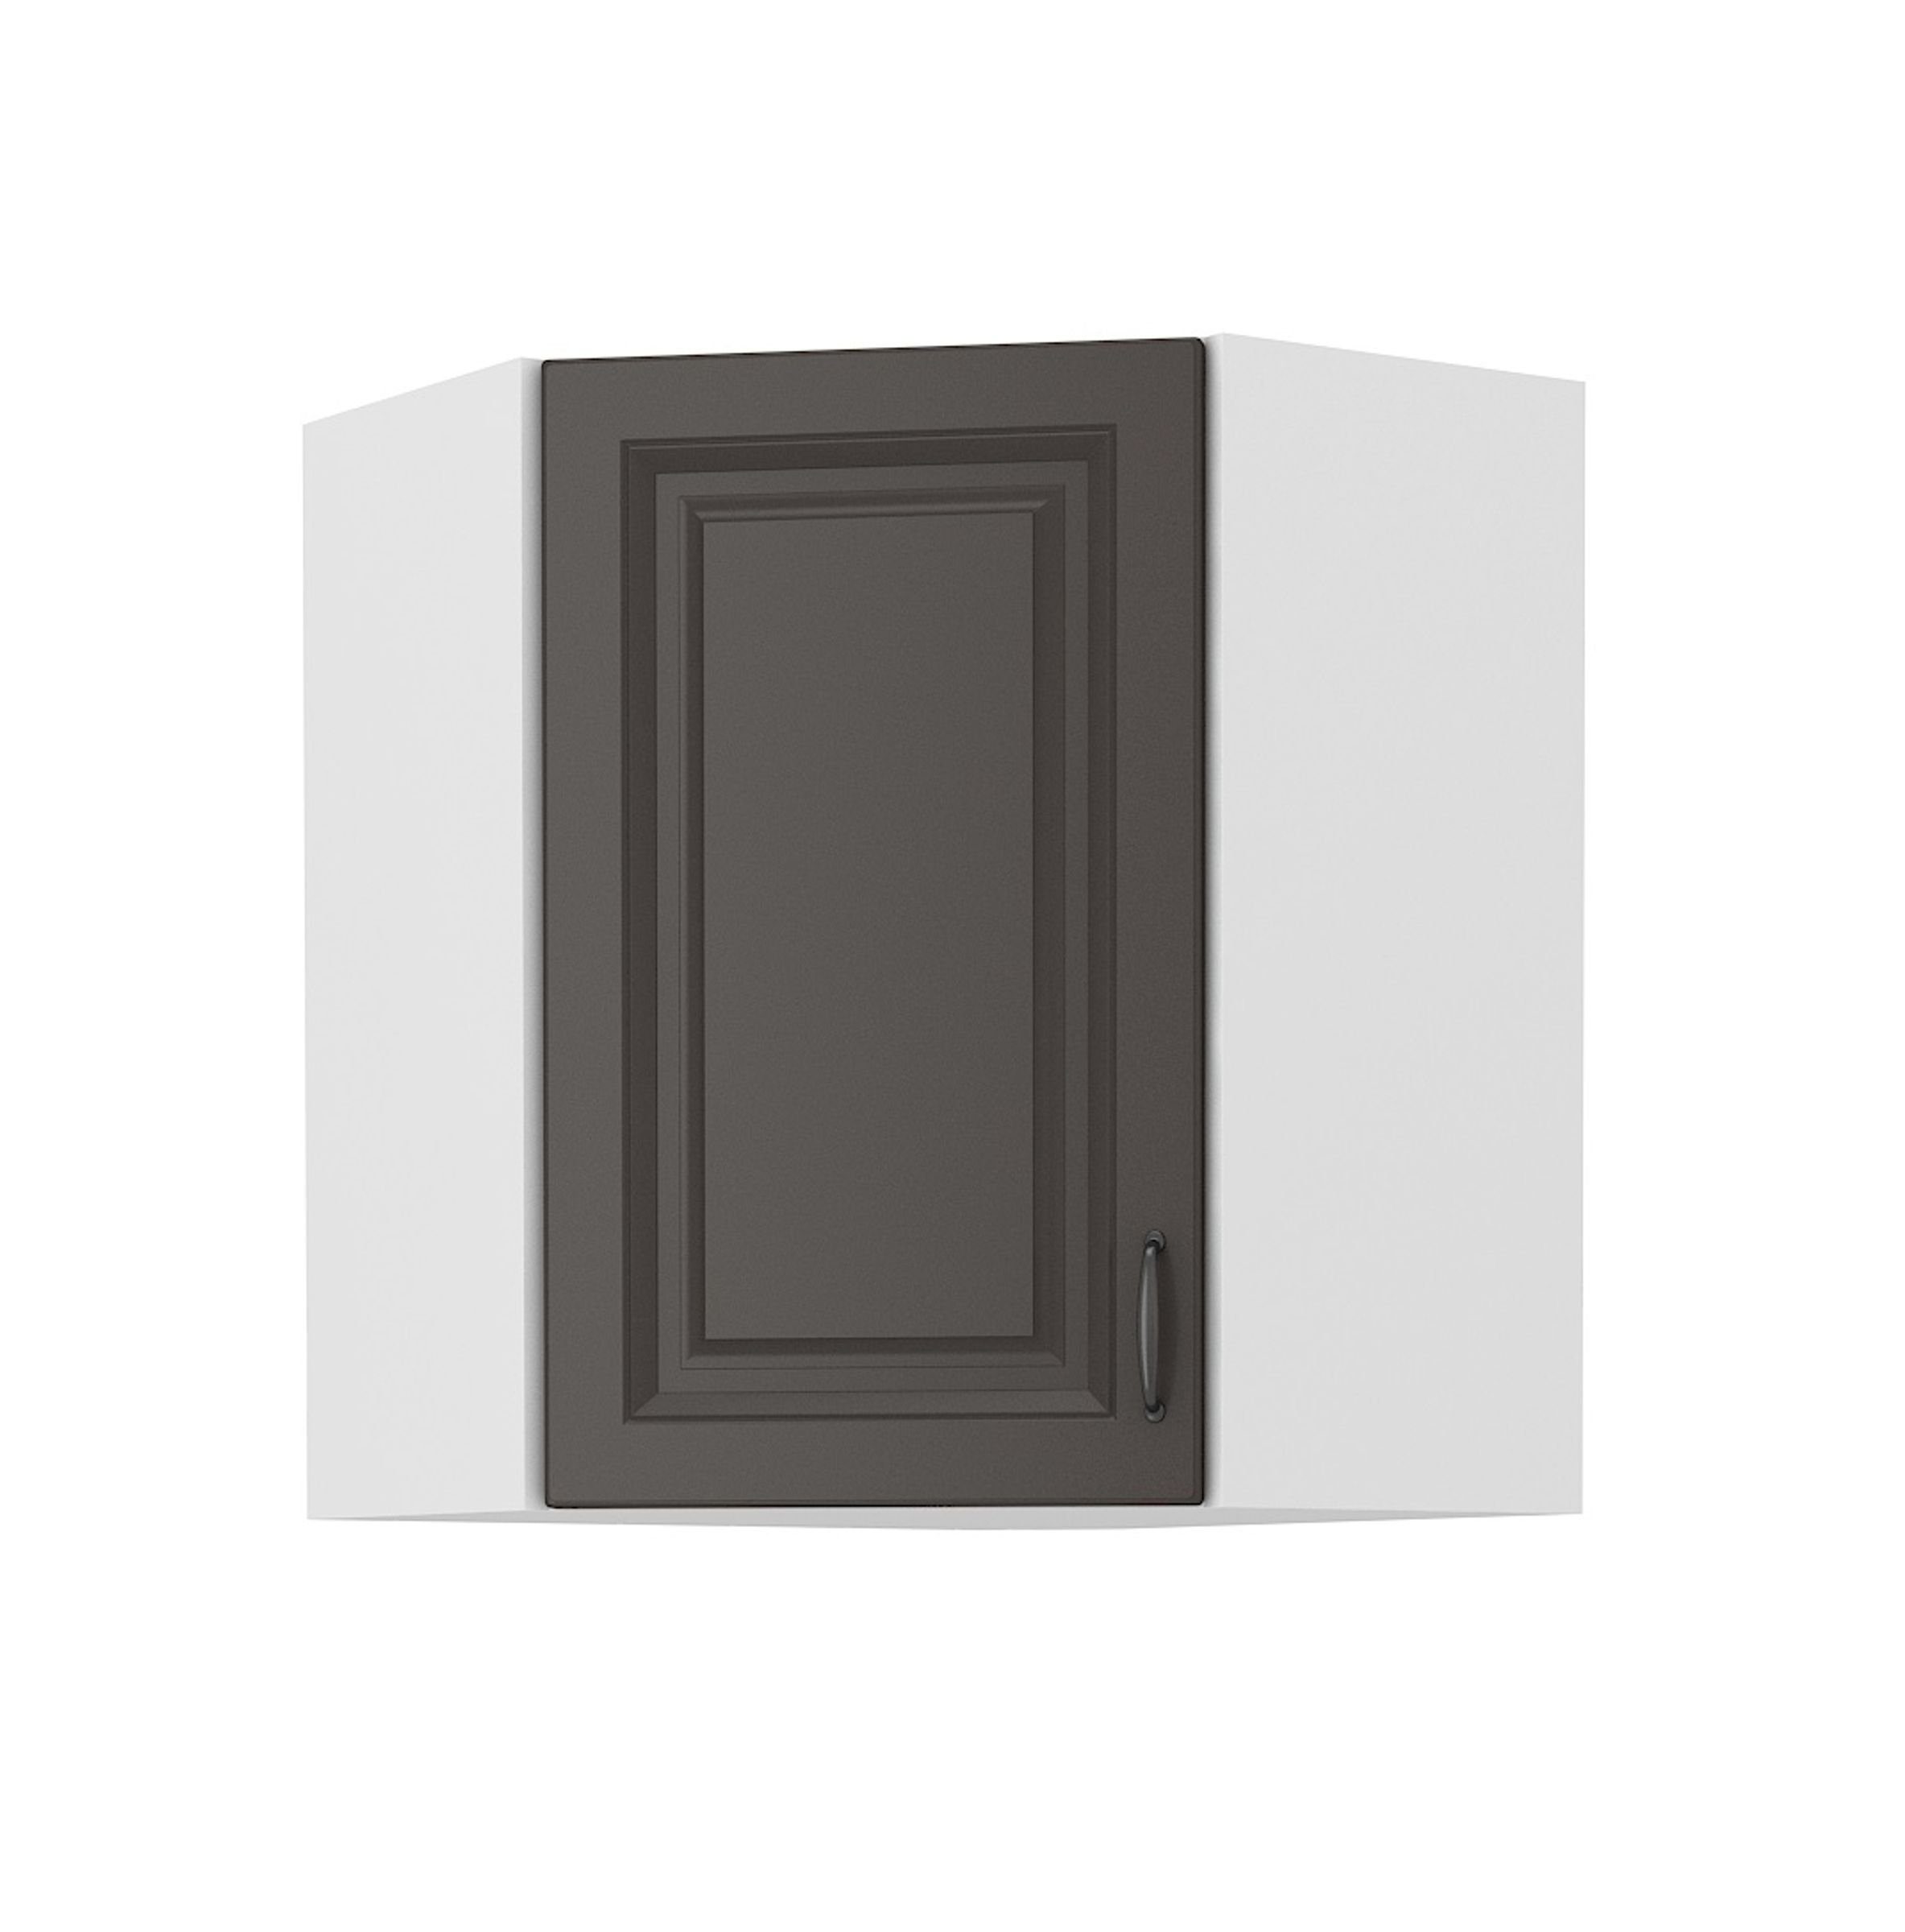 Küchen-Preisbombe Eckhängeschrank 58x58 cm Küche Stilo Grau Küchenzeile Küchenblock Einbauküche Landhaus | Hängeschränke